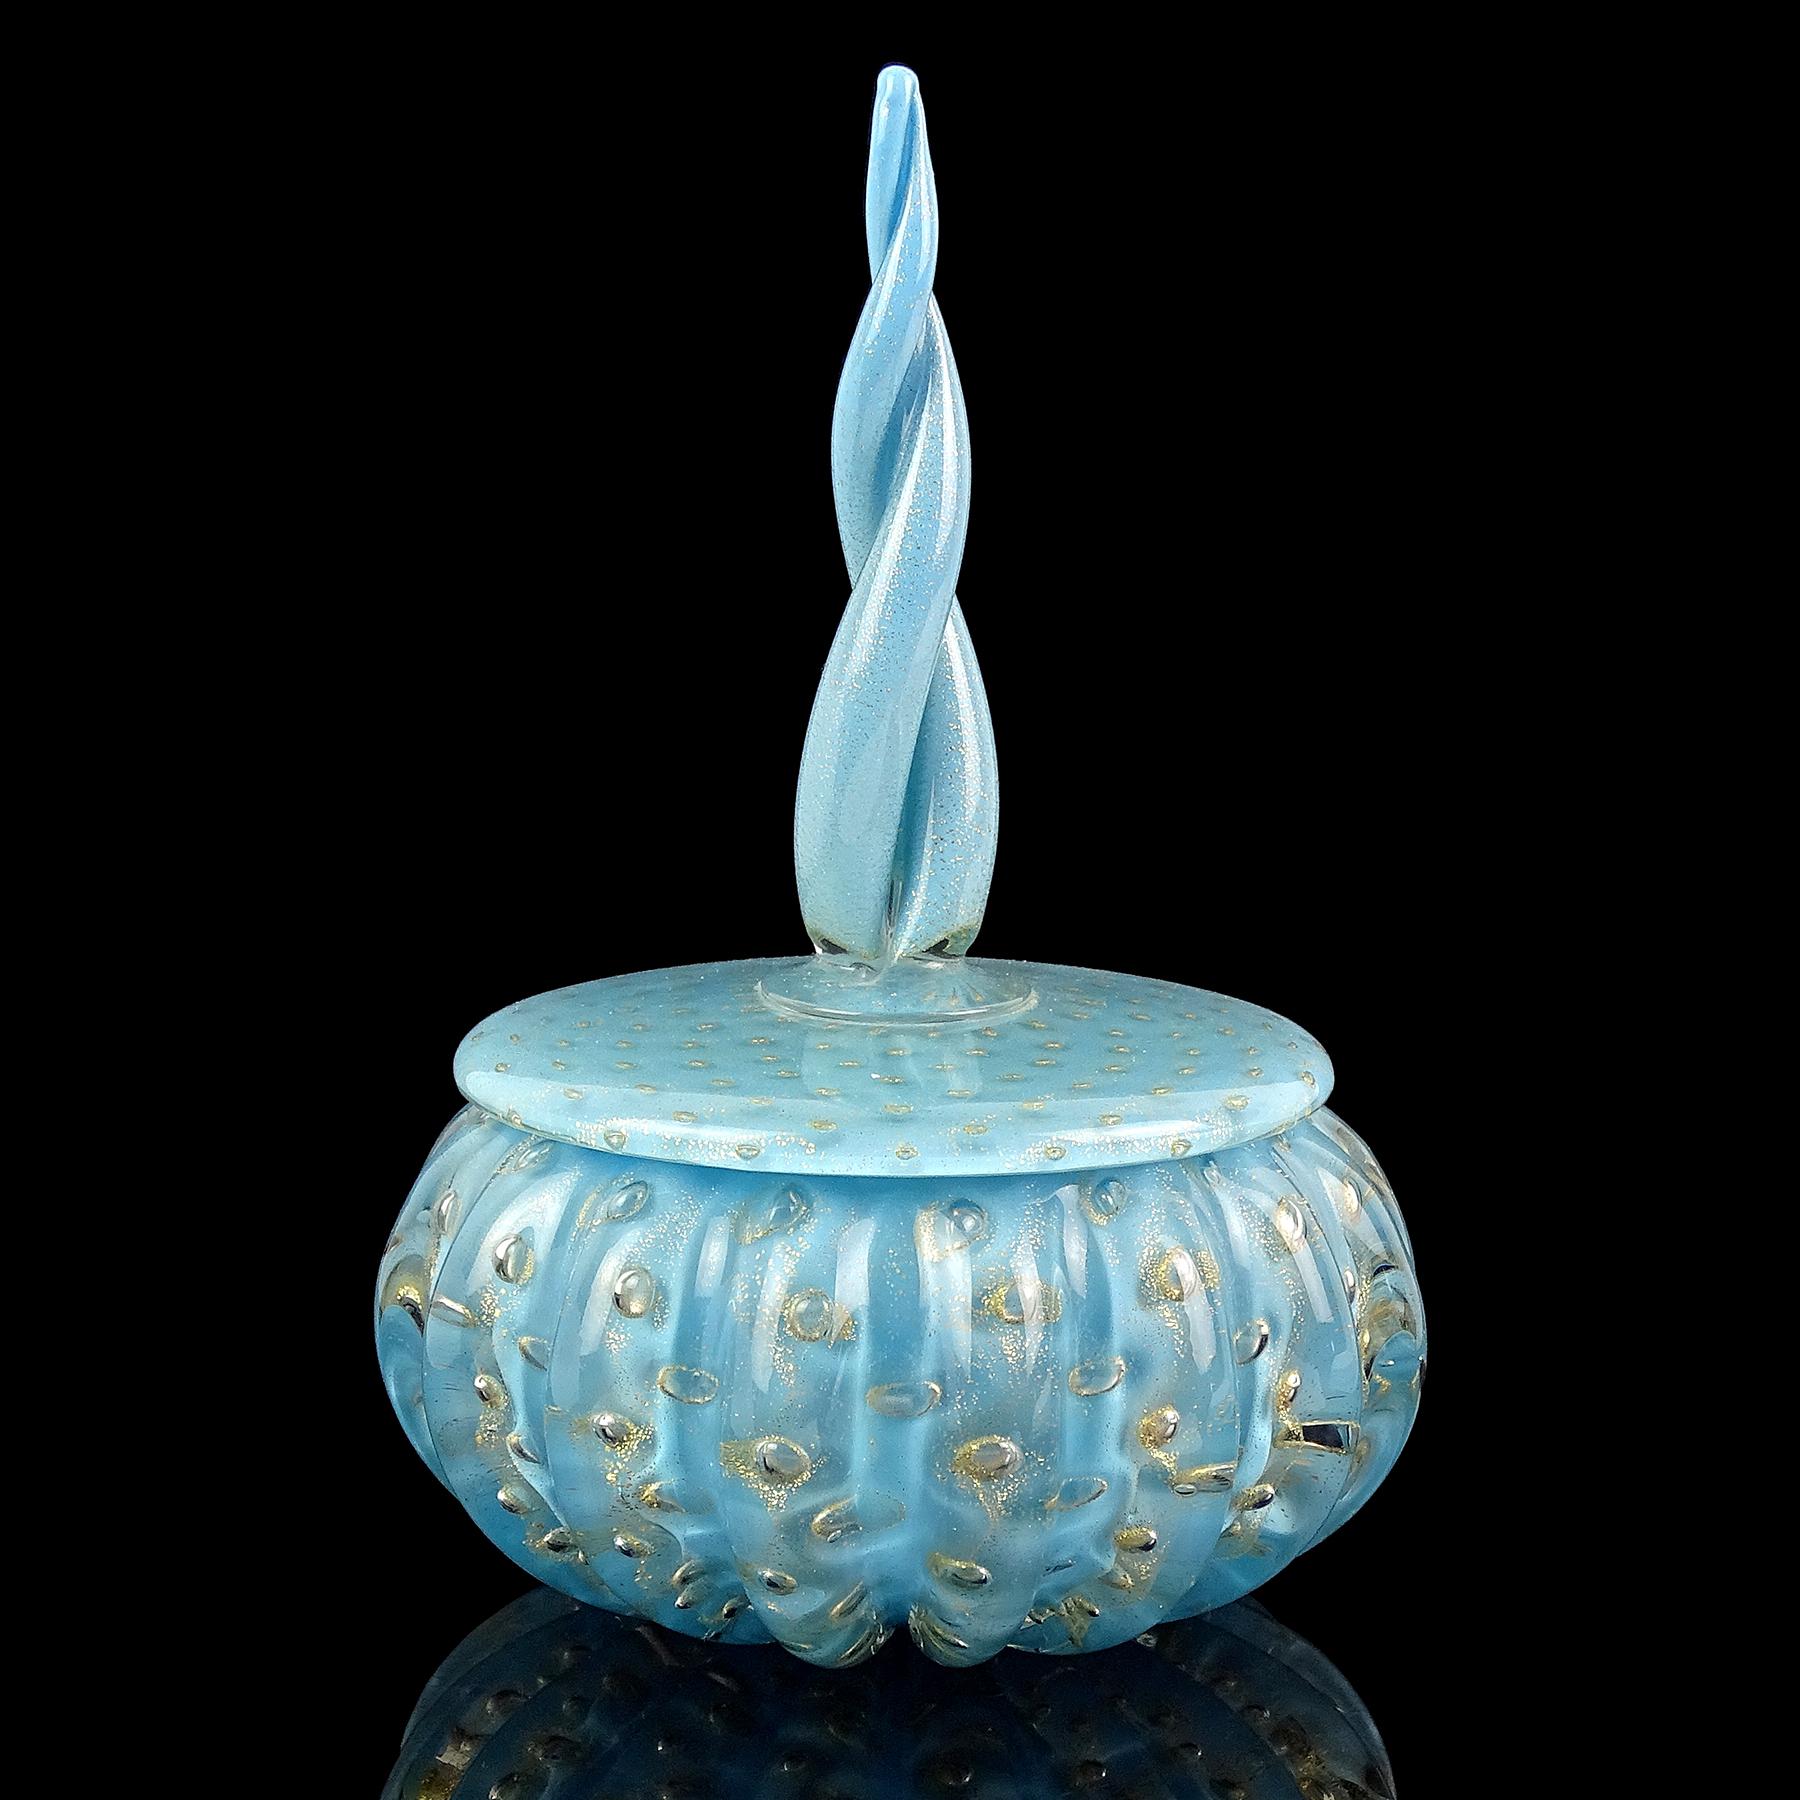 Magnifique vintage Murano soufflé à la main bleu, mouchetures d'or et bulles contrôlées verre d'art italien poudre / boîte à bijoux. Attribué au designer Alfredo Barbini, vers les années 1950. Le couvercle de la boîte est orné d'une pointe torsadée.